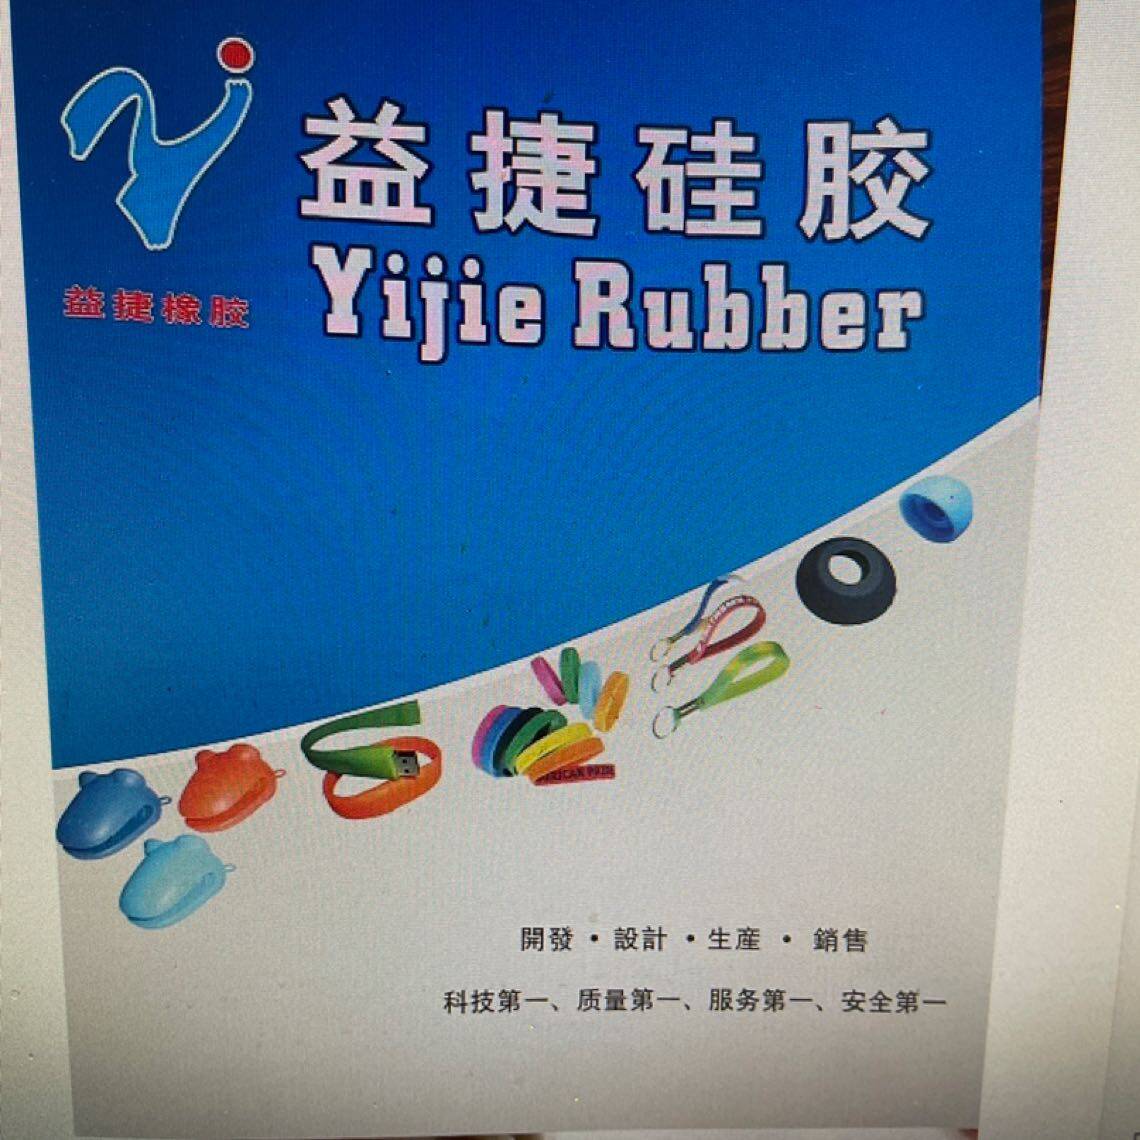 东莞市益捷硅橡胶制品有限公司